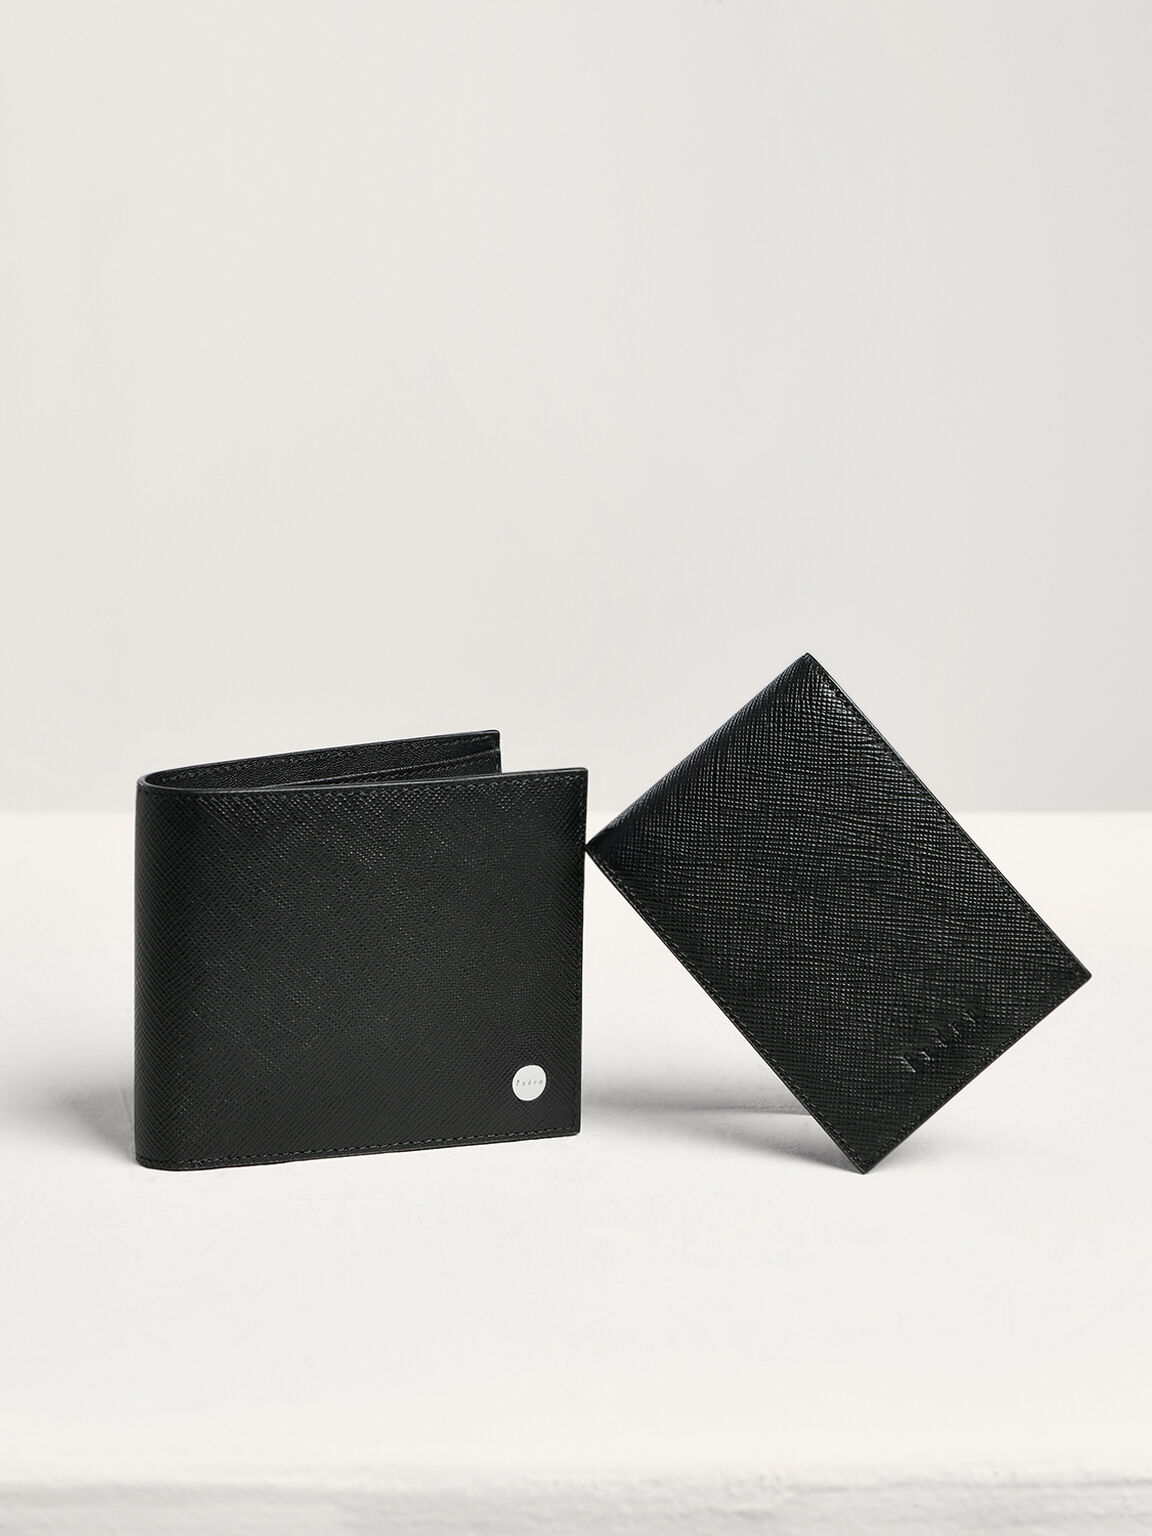 Oliver Leather Bi-Fold Wallet with Insert, Black, hi-res